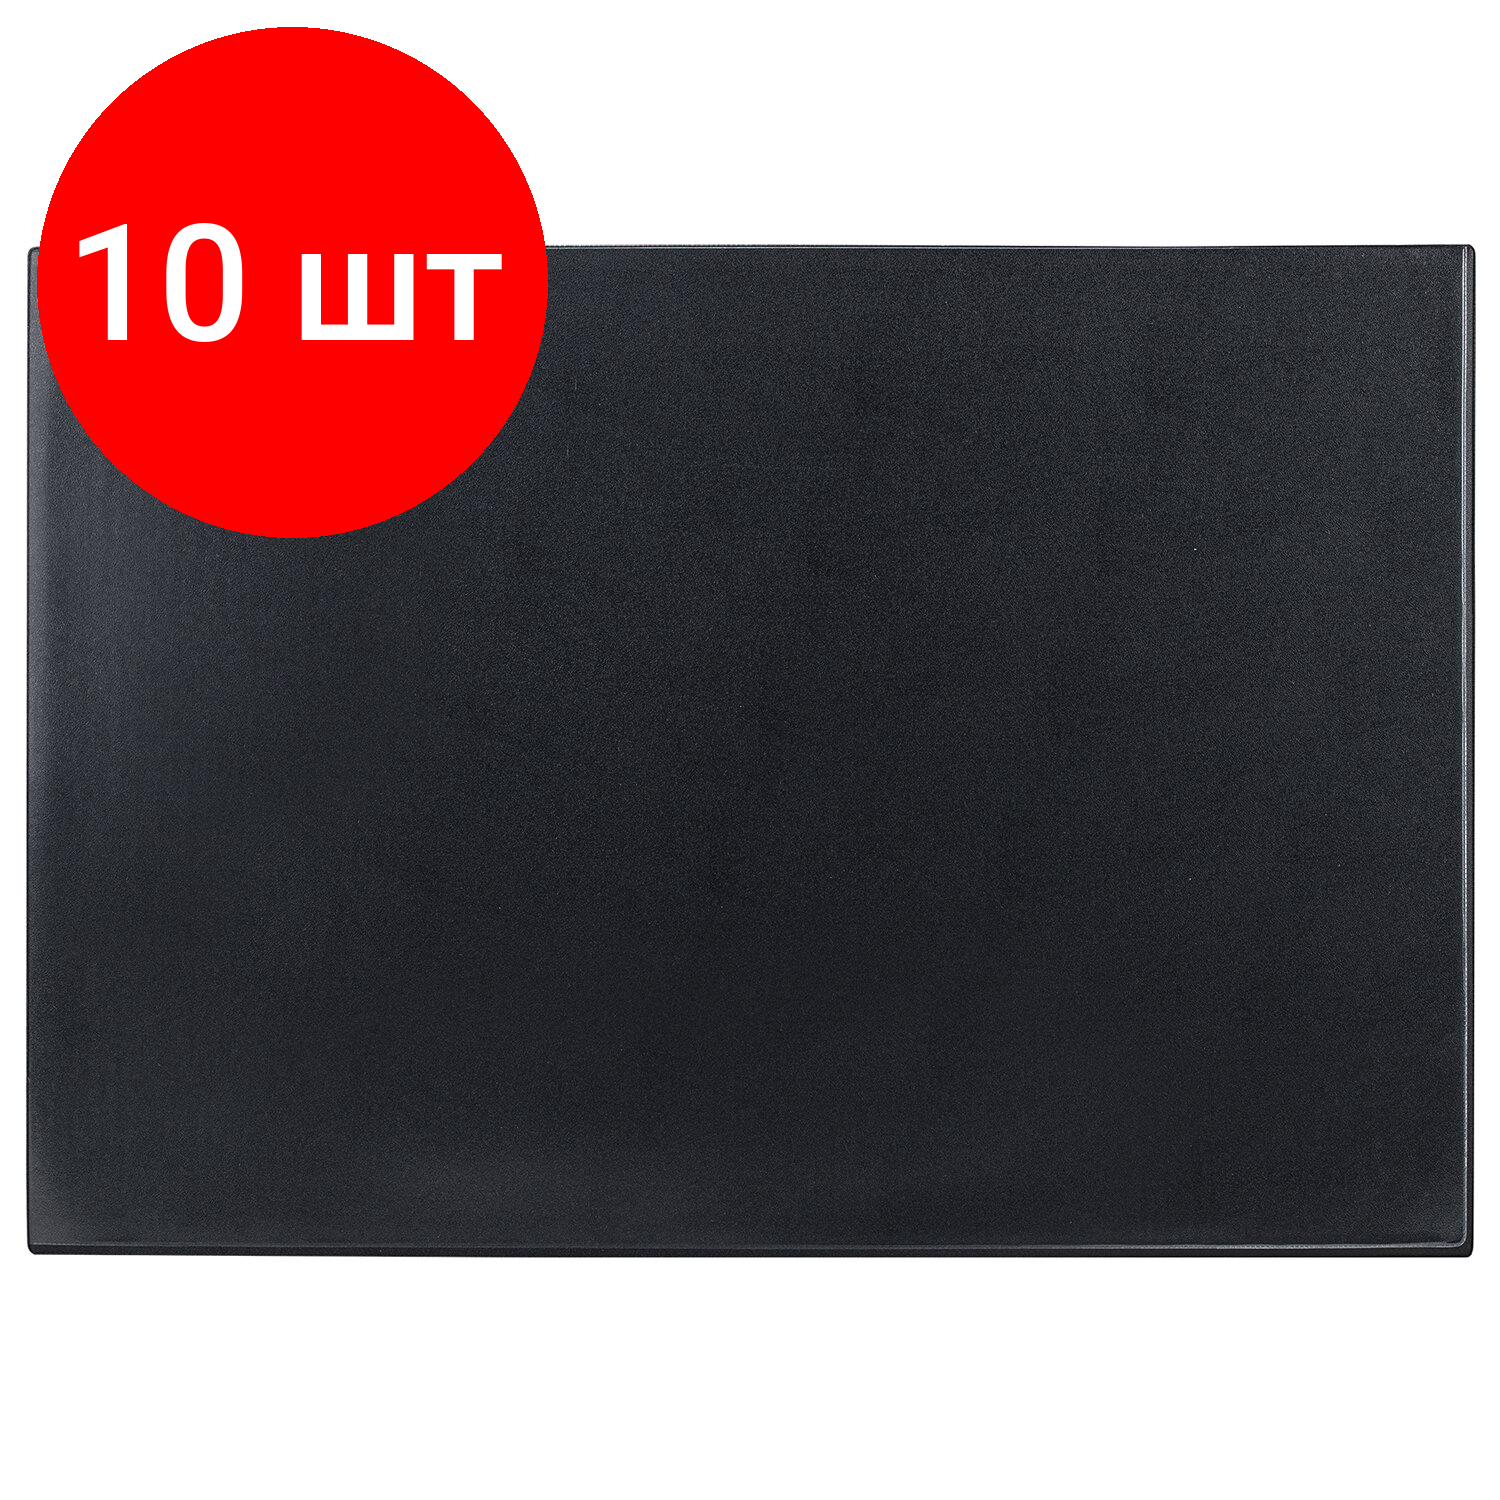 Комплект 10 шт, Коврик-подкладка настольный для письма (590х380 мм), с прозрачным карманом, черный, BRAUBERG, 236774